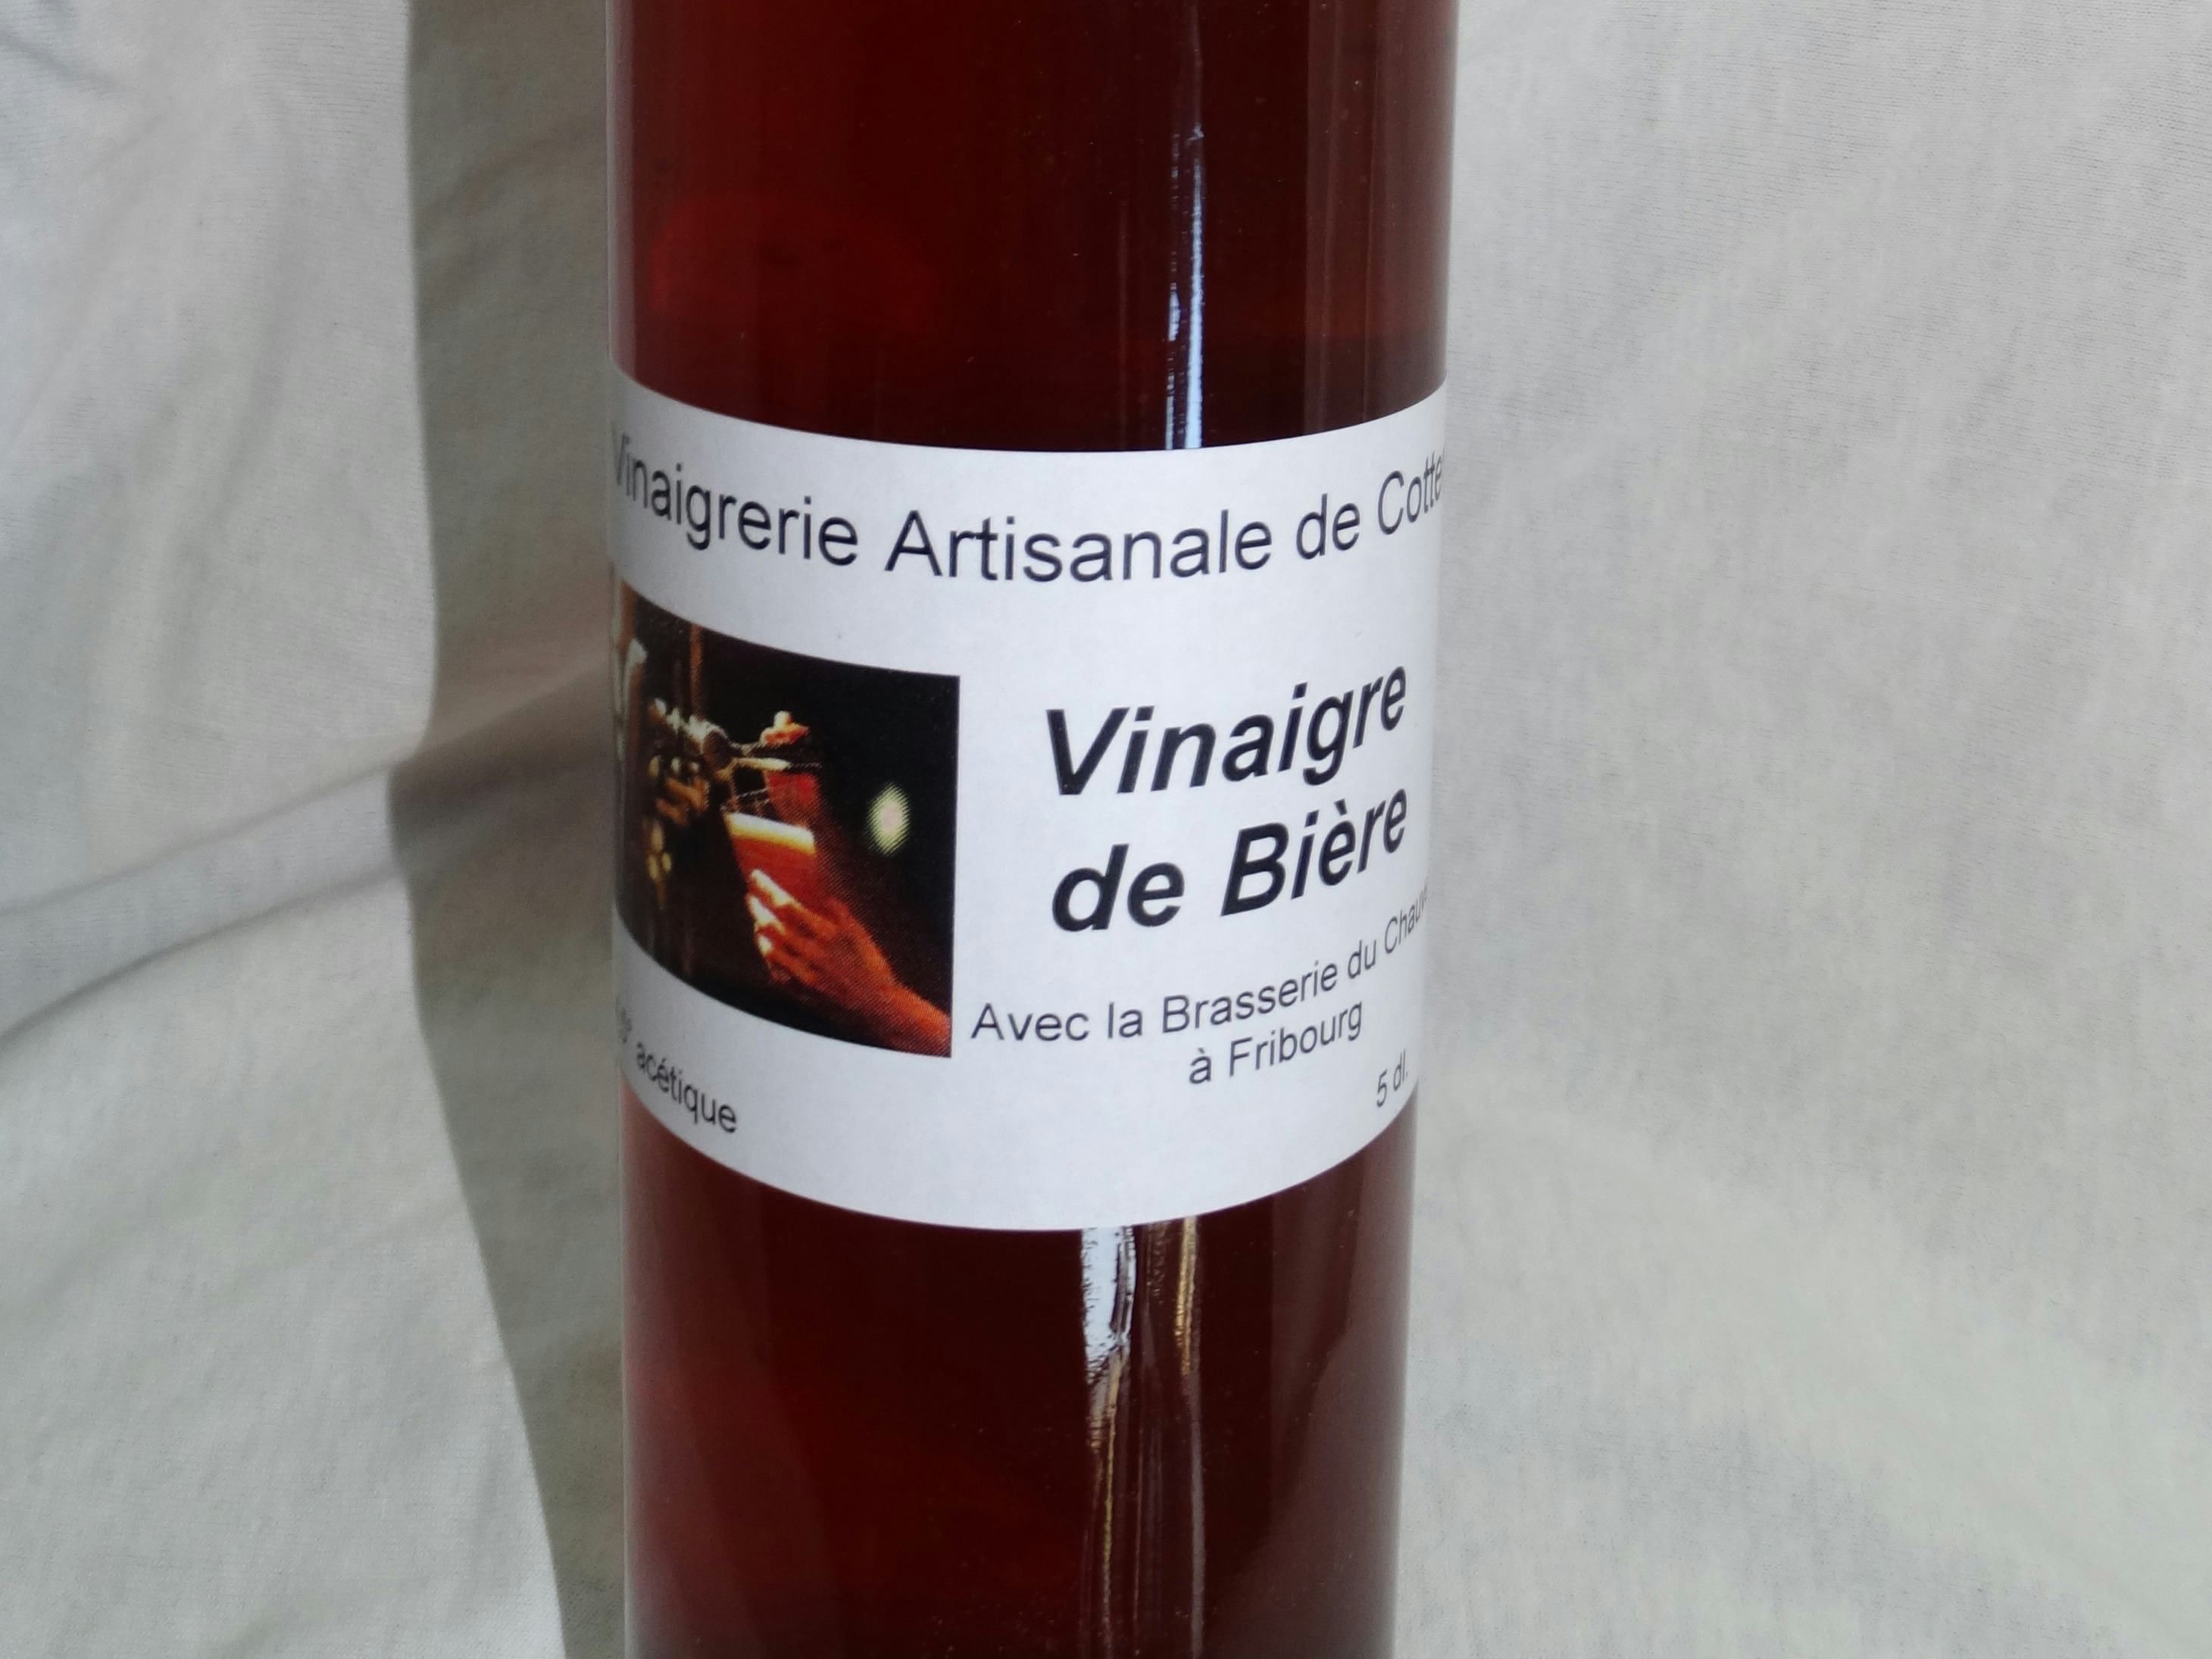 Aceto di birra, Vinaigrerie-Moutarderie du Grand-Pré, Hautemorges, image 1 | Mimelis